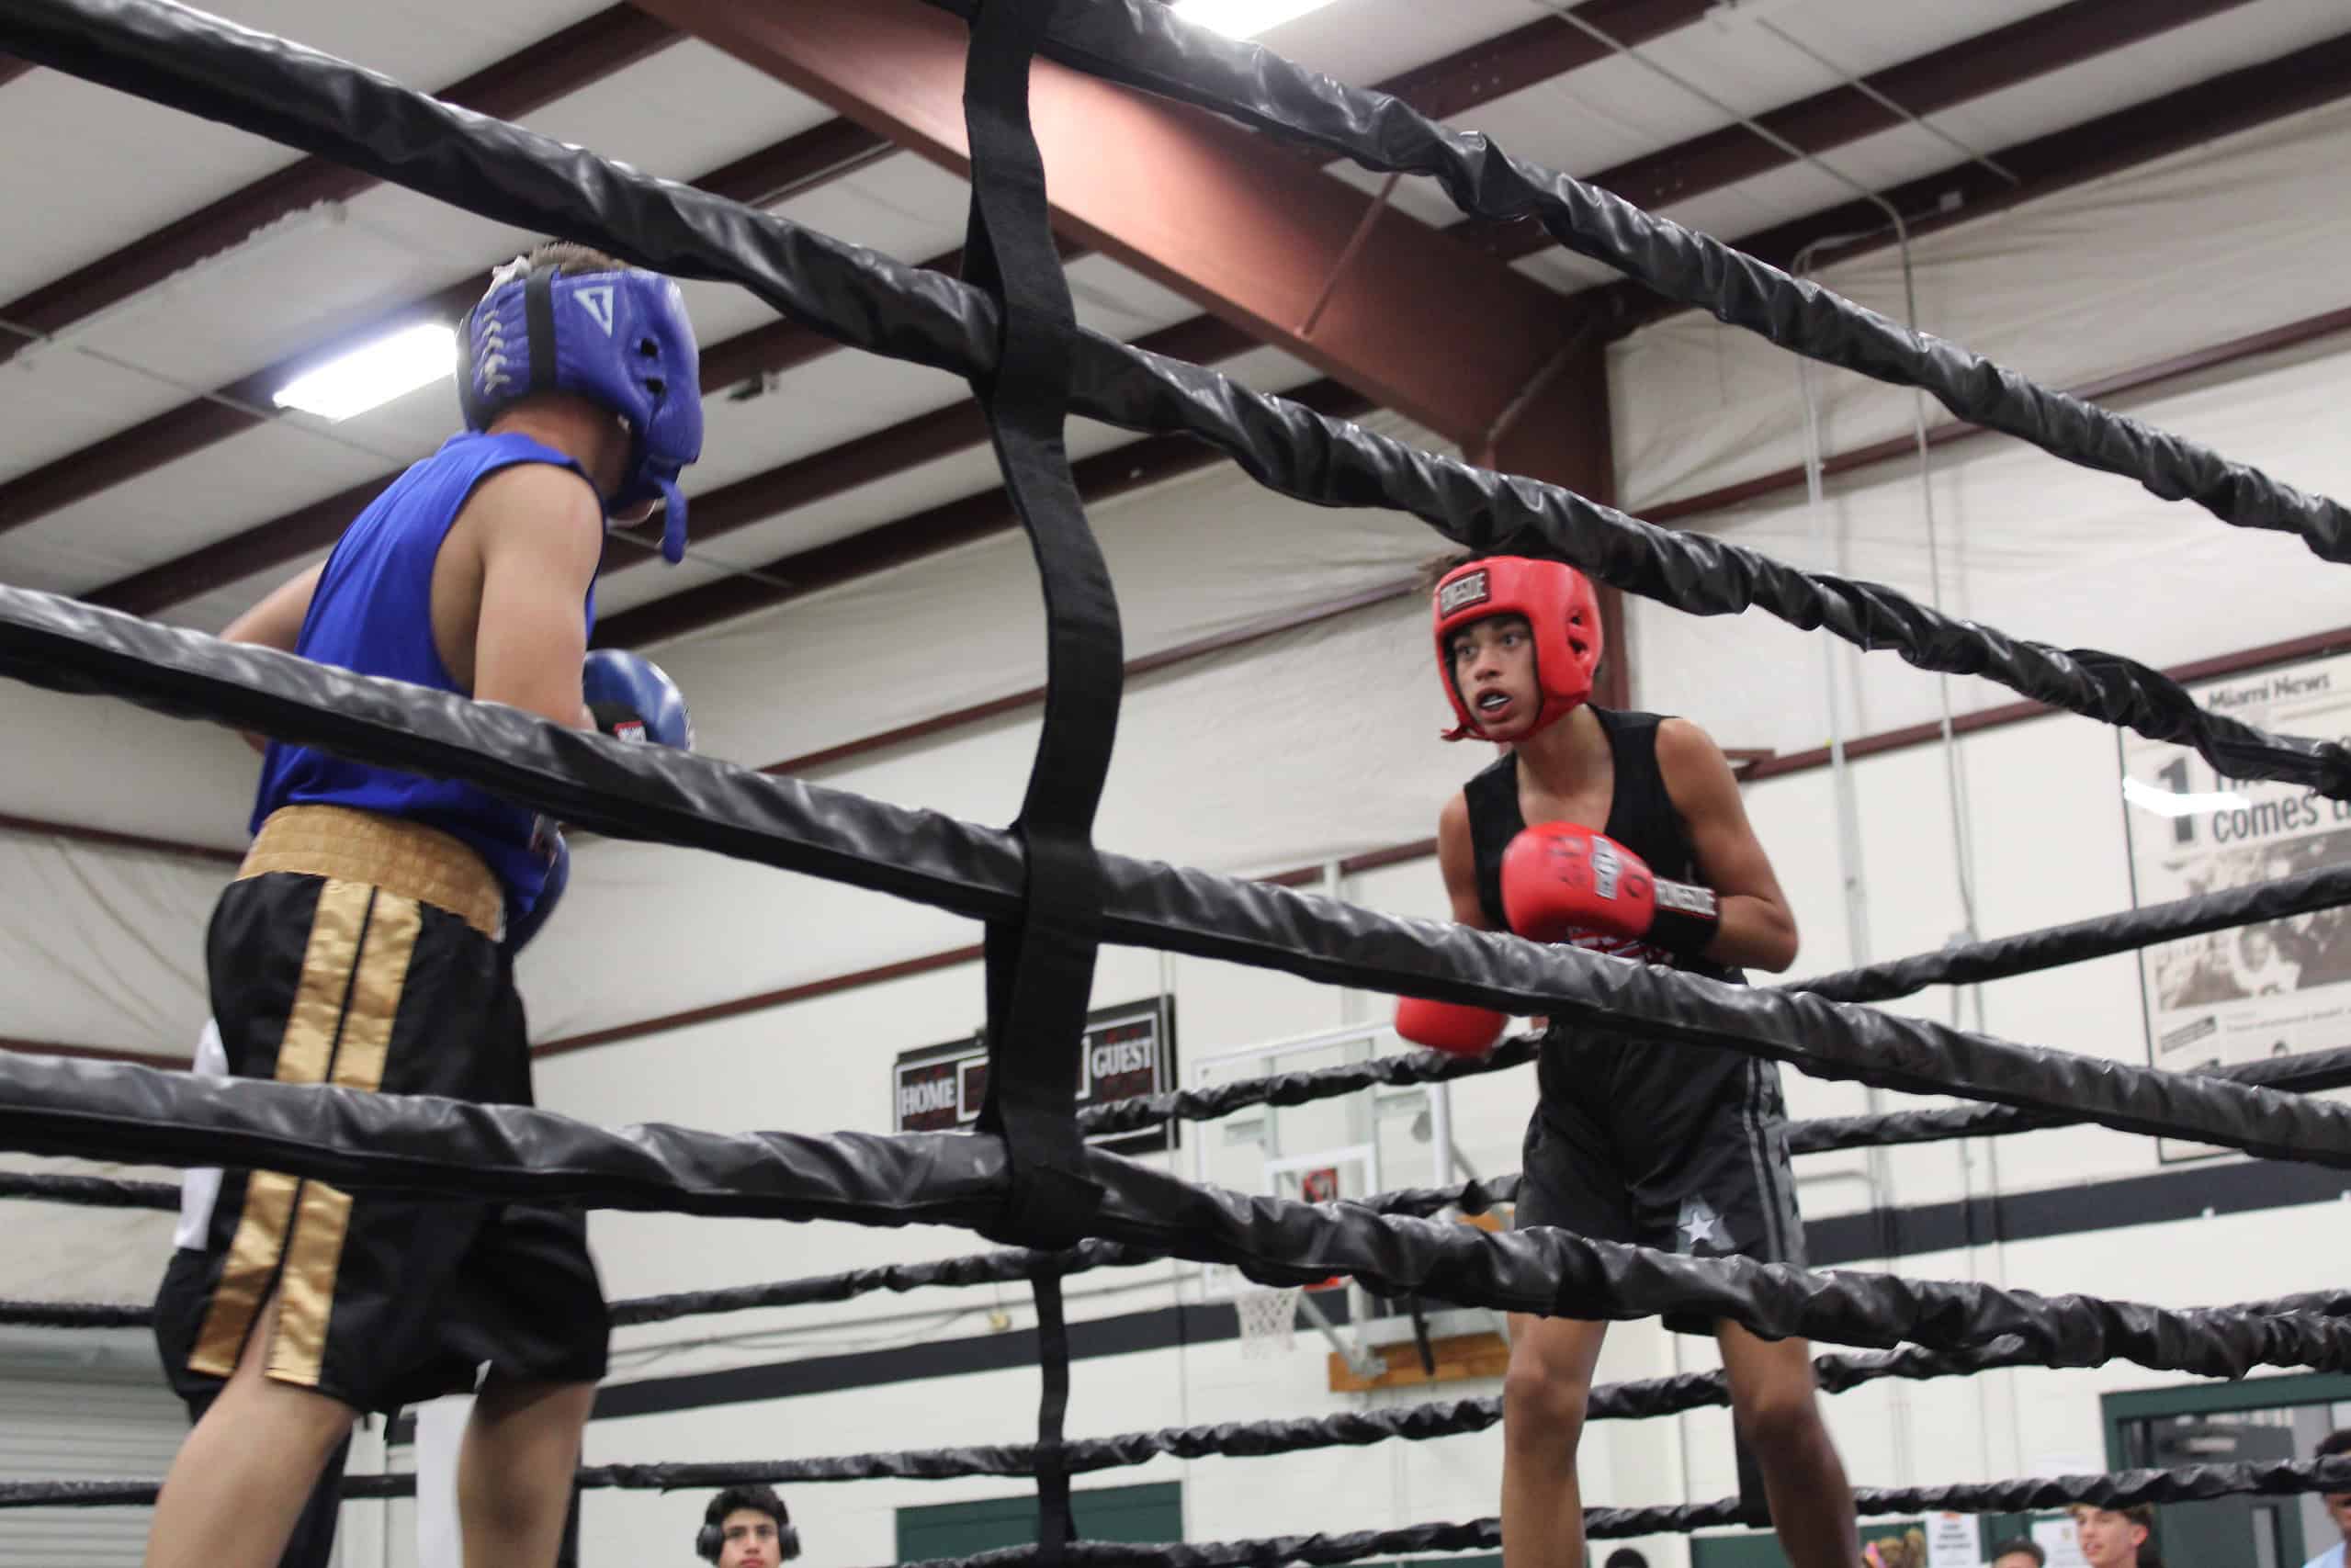 Joshua Aqueron (right) faces off against Cruz Palacios (left) in the ring.